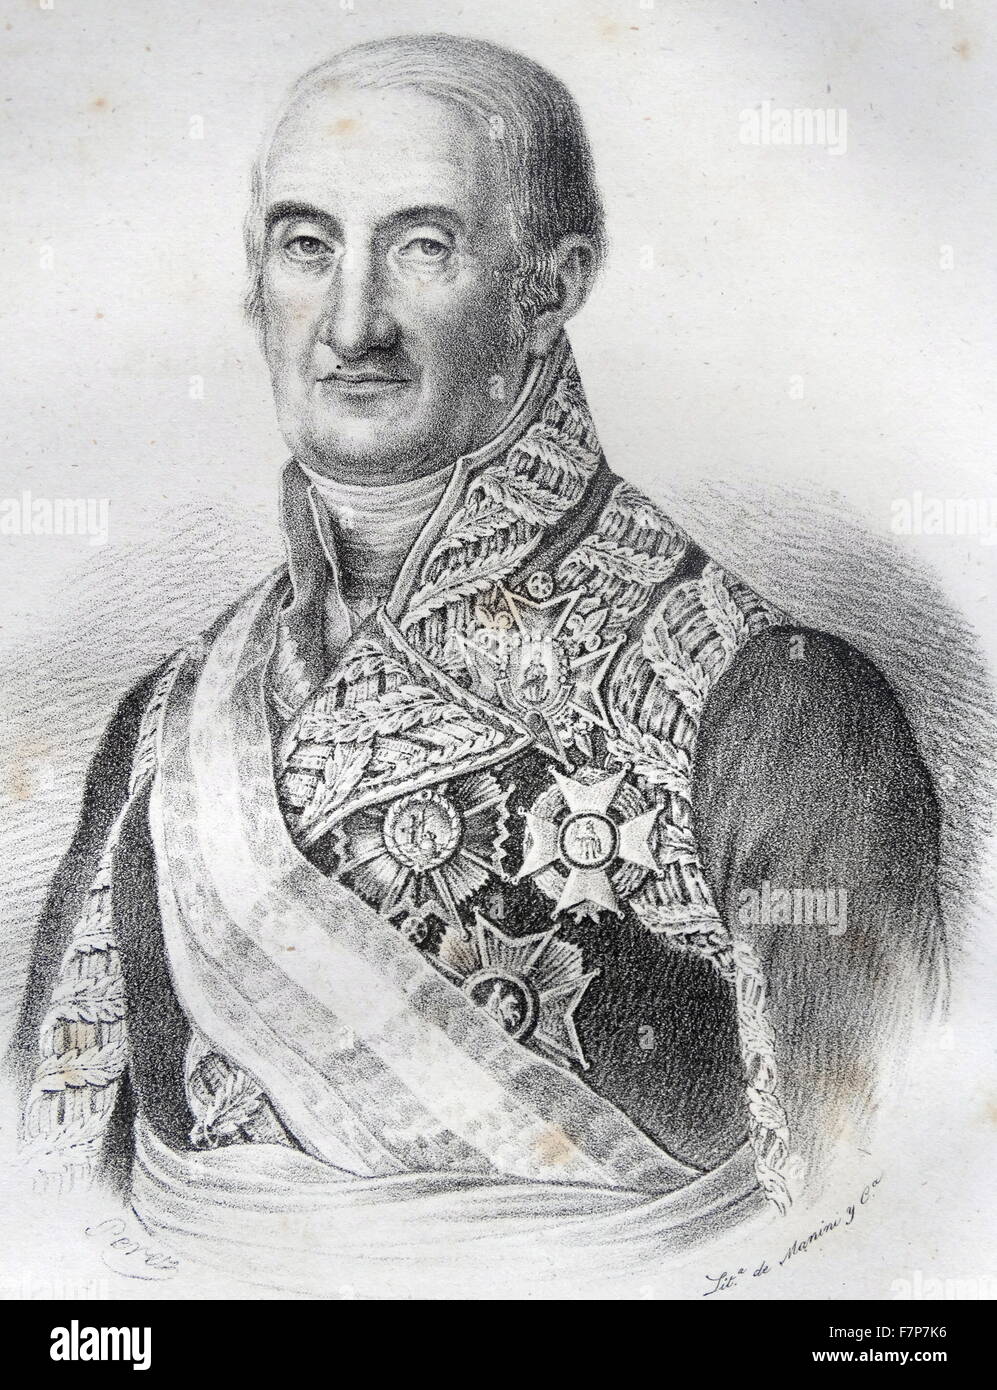 Ritratto del generale Francisco Javier Castaños, primo duca di Bailén (1758-1852) Spagnolo generale durante la Guerra Peninsulare. Datata 1842 Foto Stock